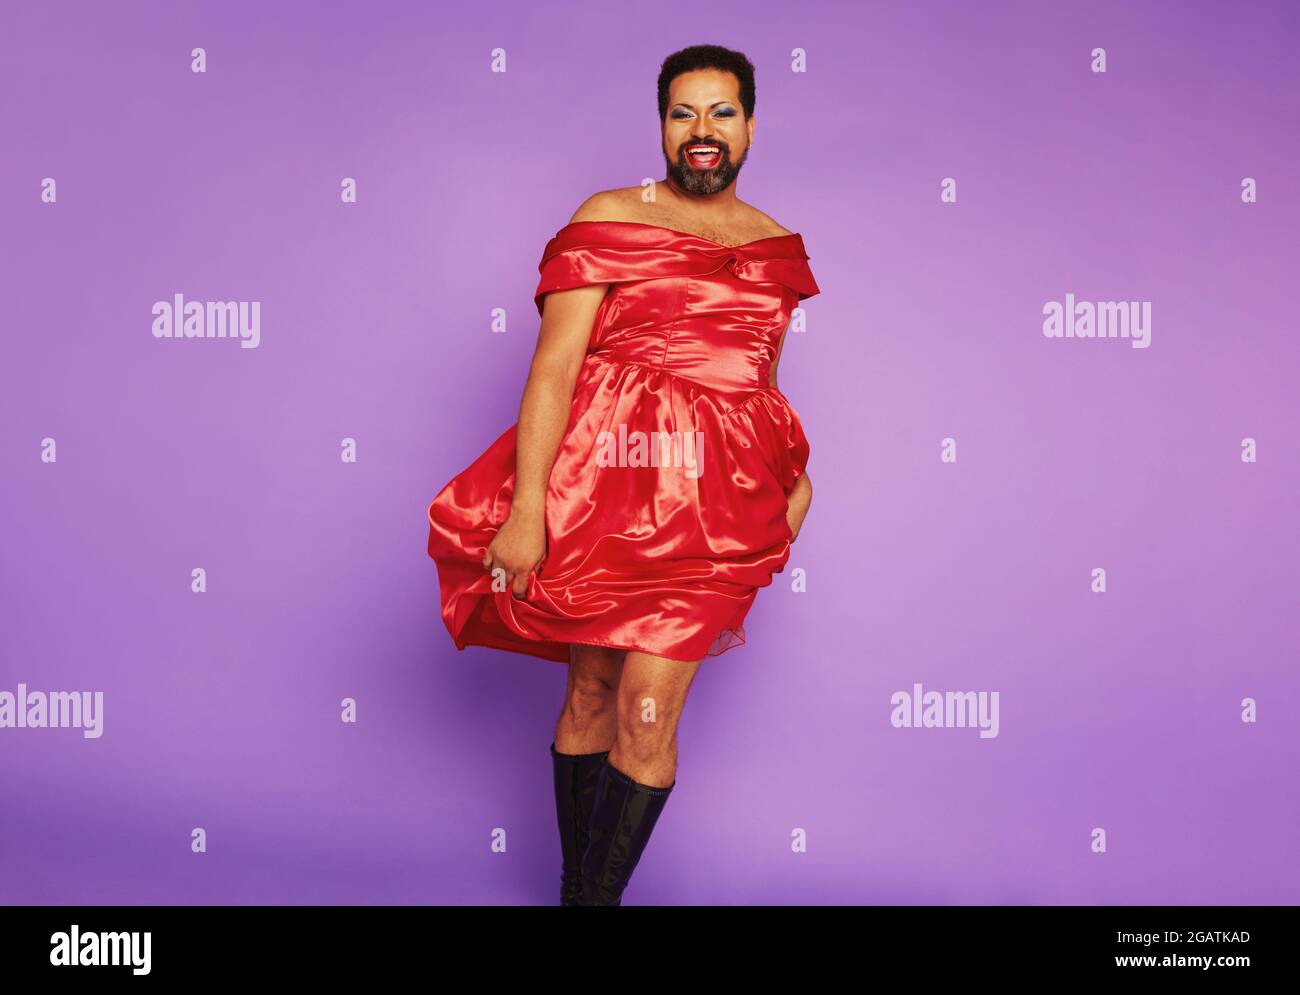 Modèle de queer debout dans une robe féminine. Homme de sexe fluide portant une belle robe chantant sur fond violet. Banque D'Images